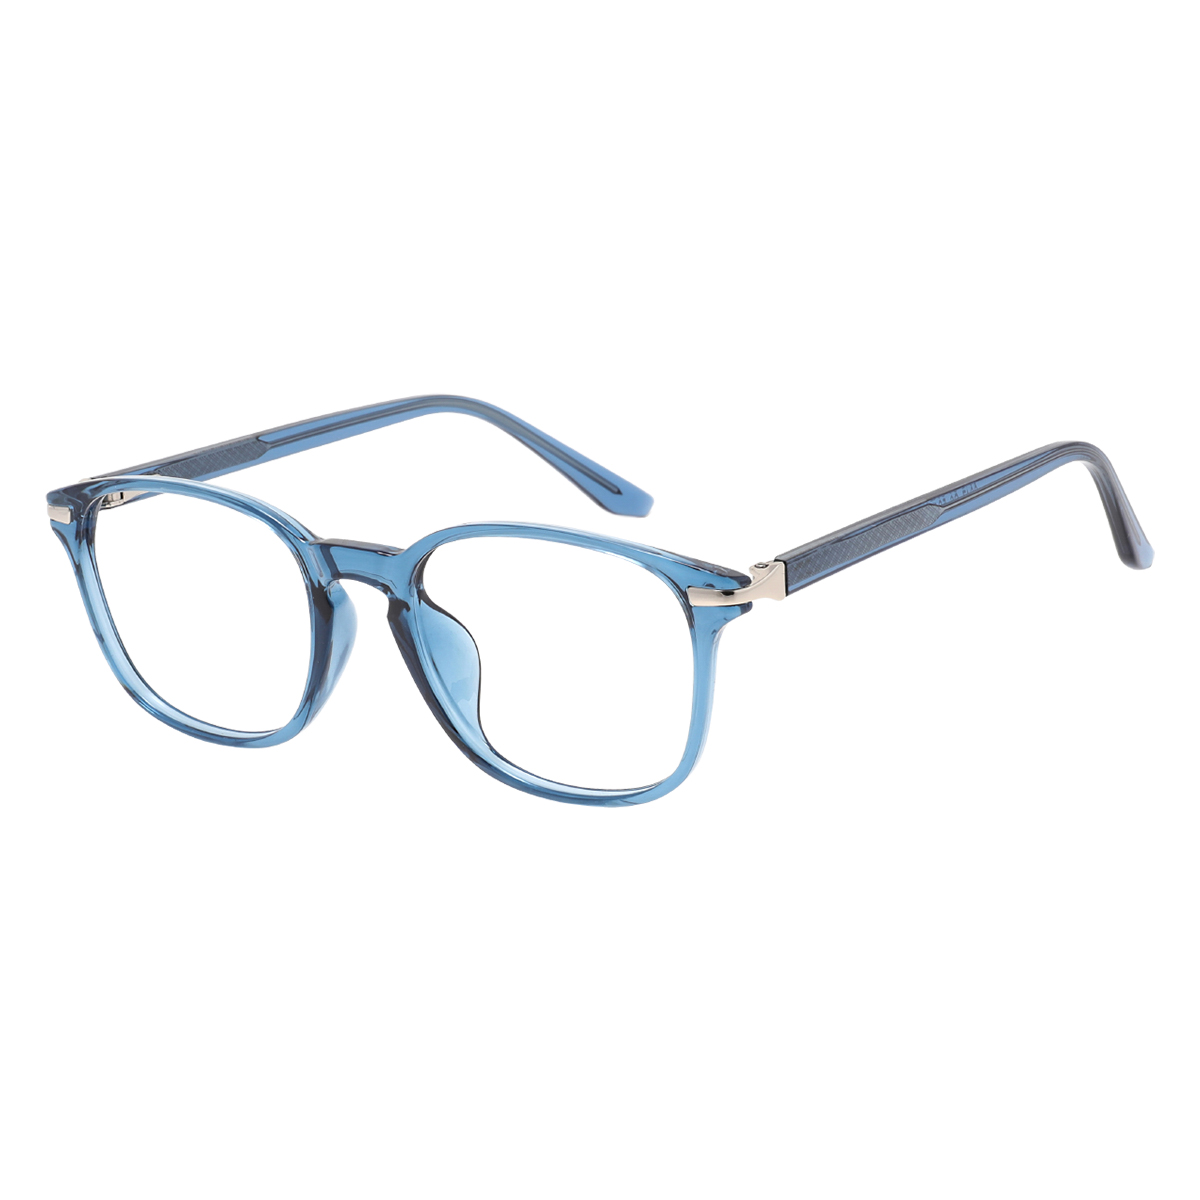 Gorgo - Square Blue Reading Glasses for Men & Women